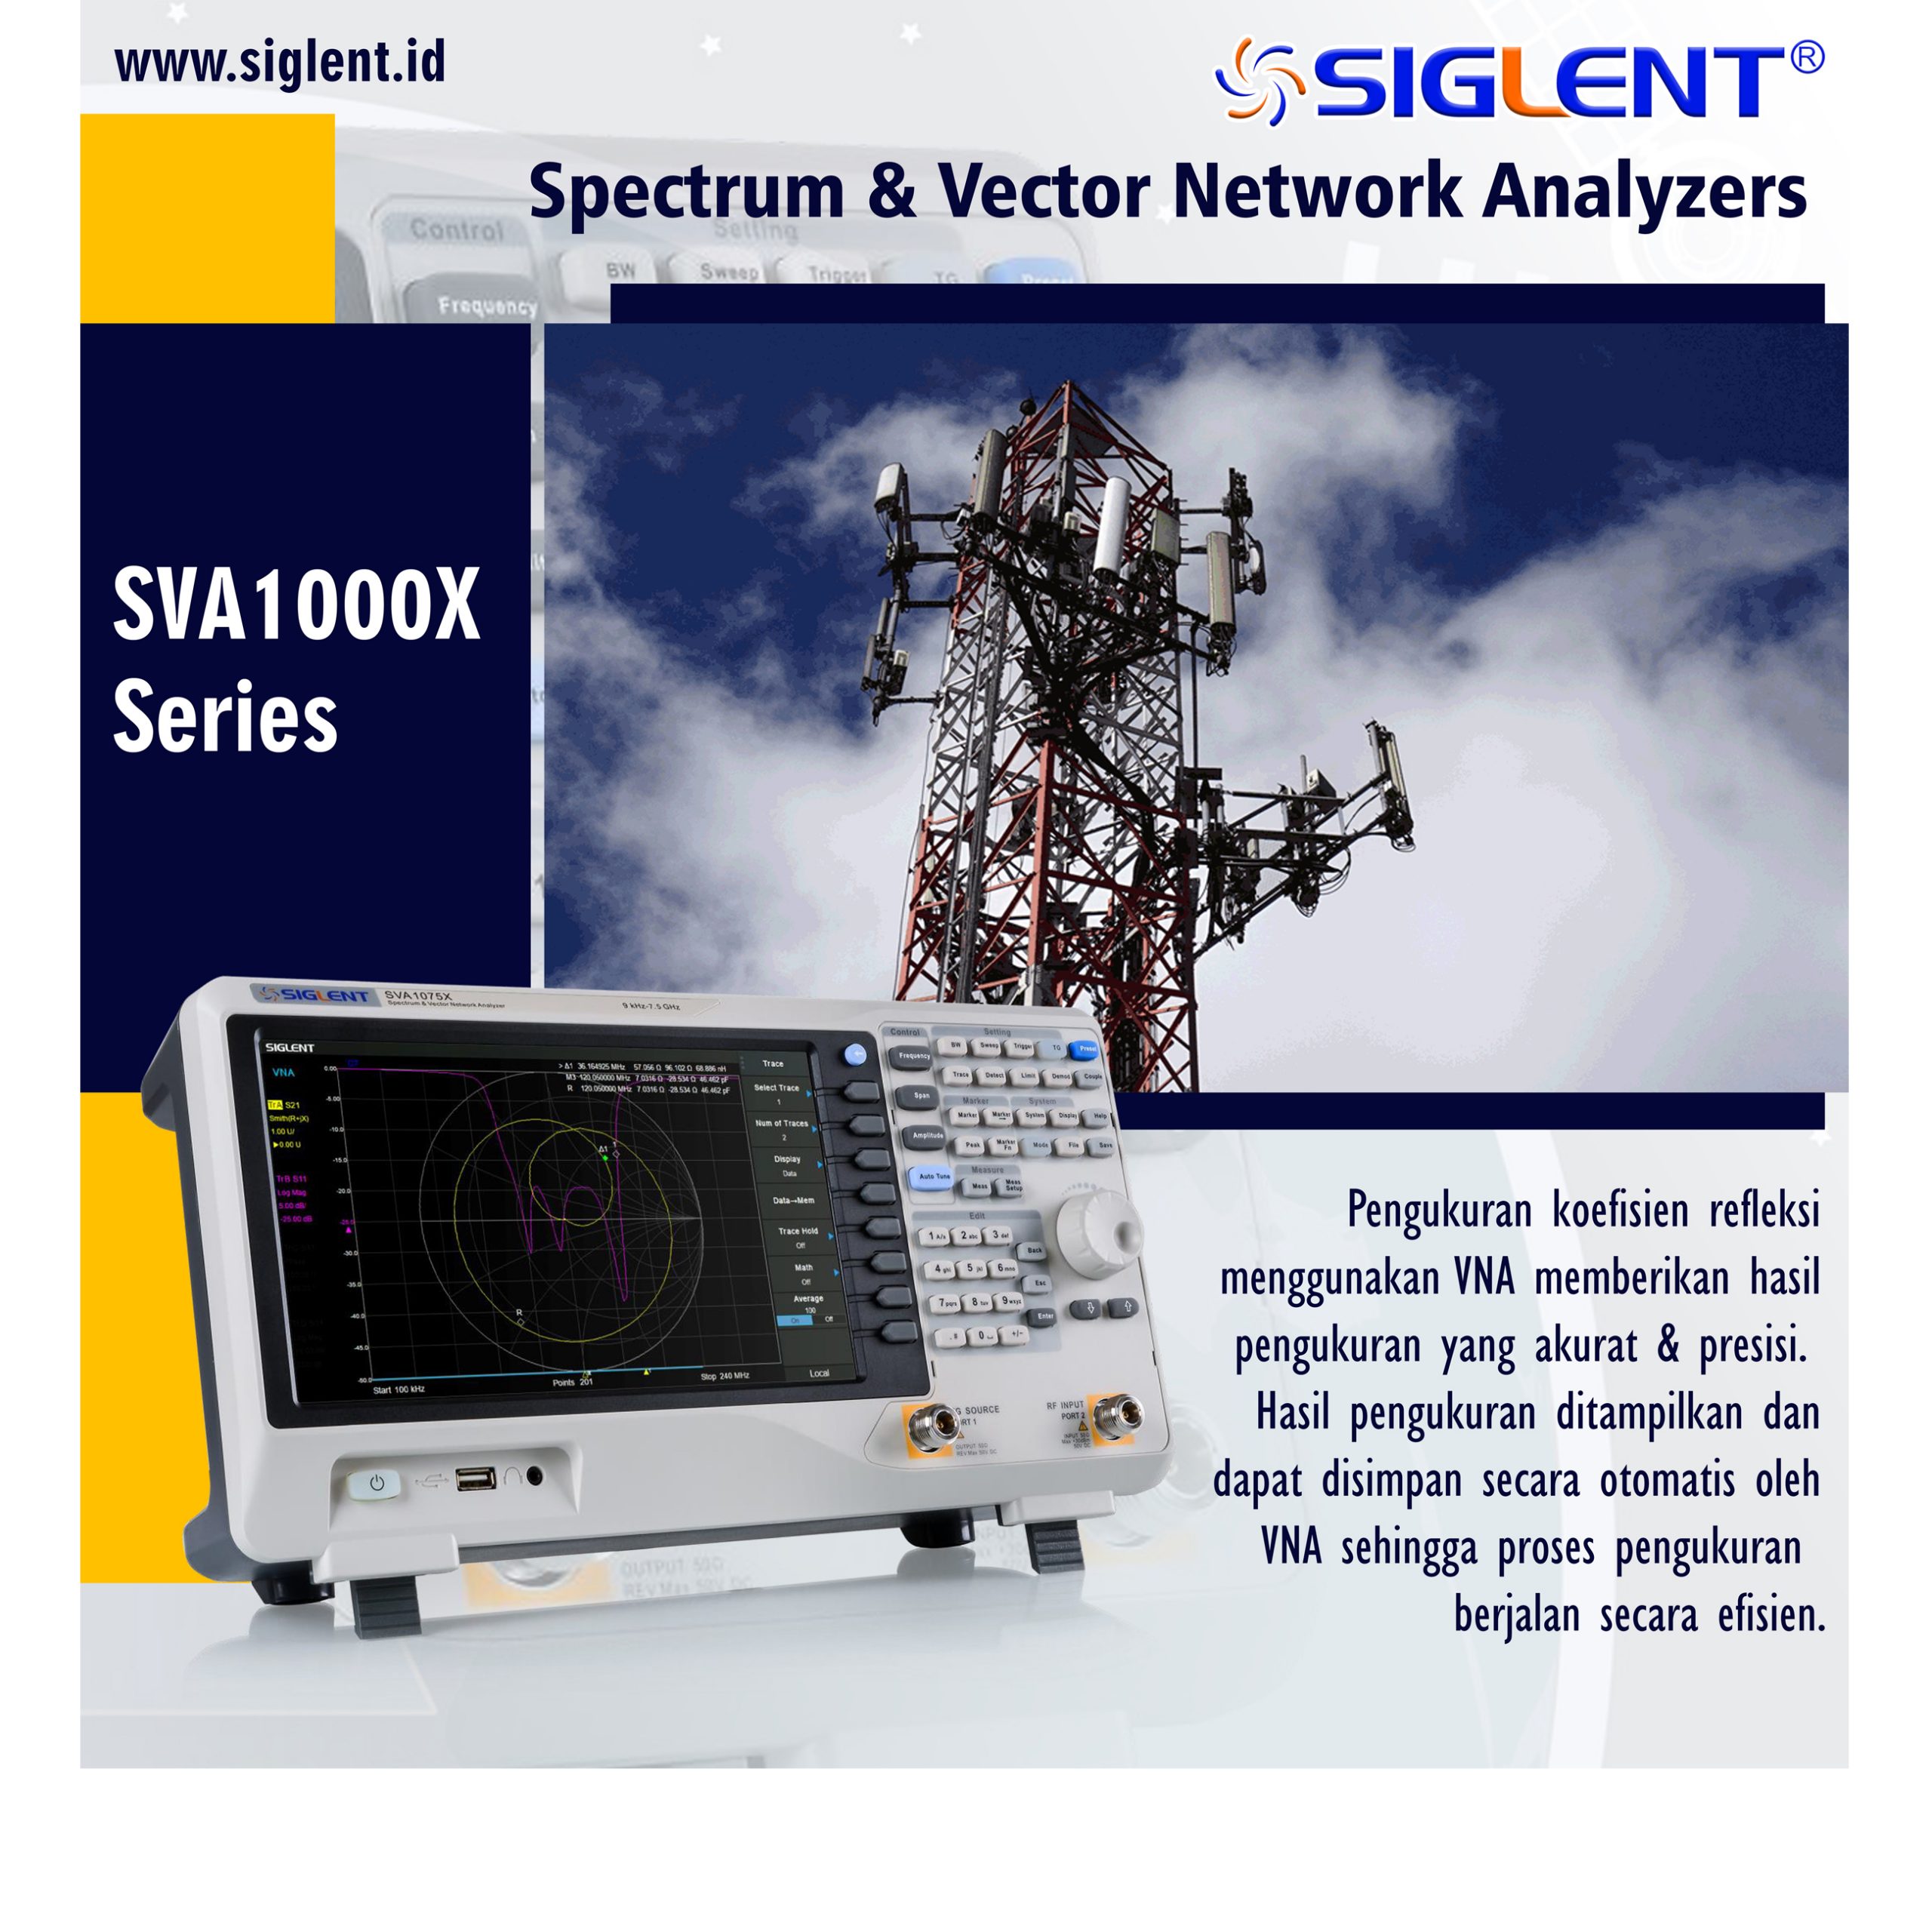 Spectrum & Vector Network Analyzer SVA1000X